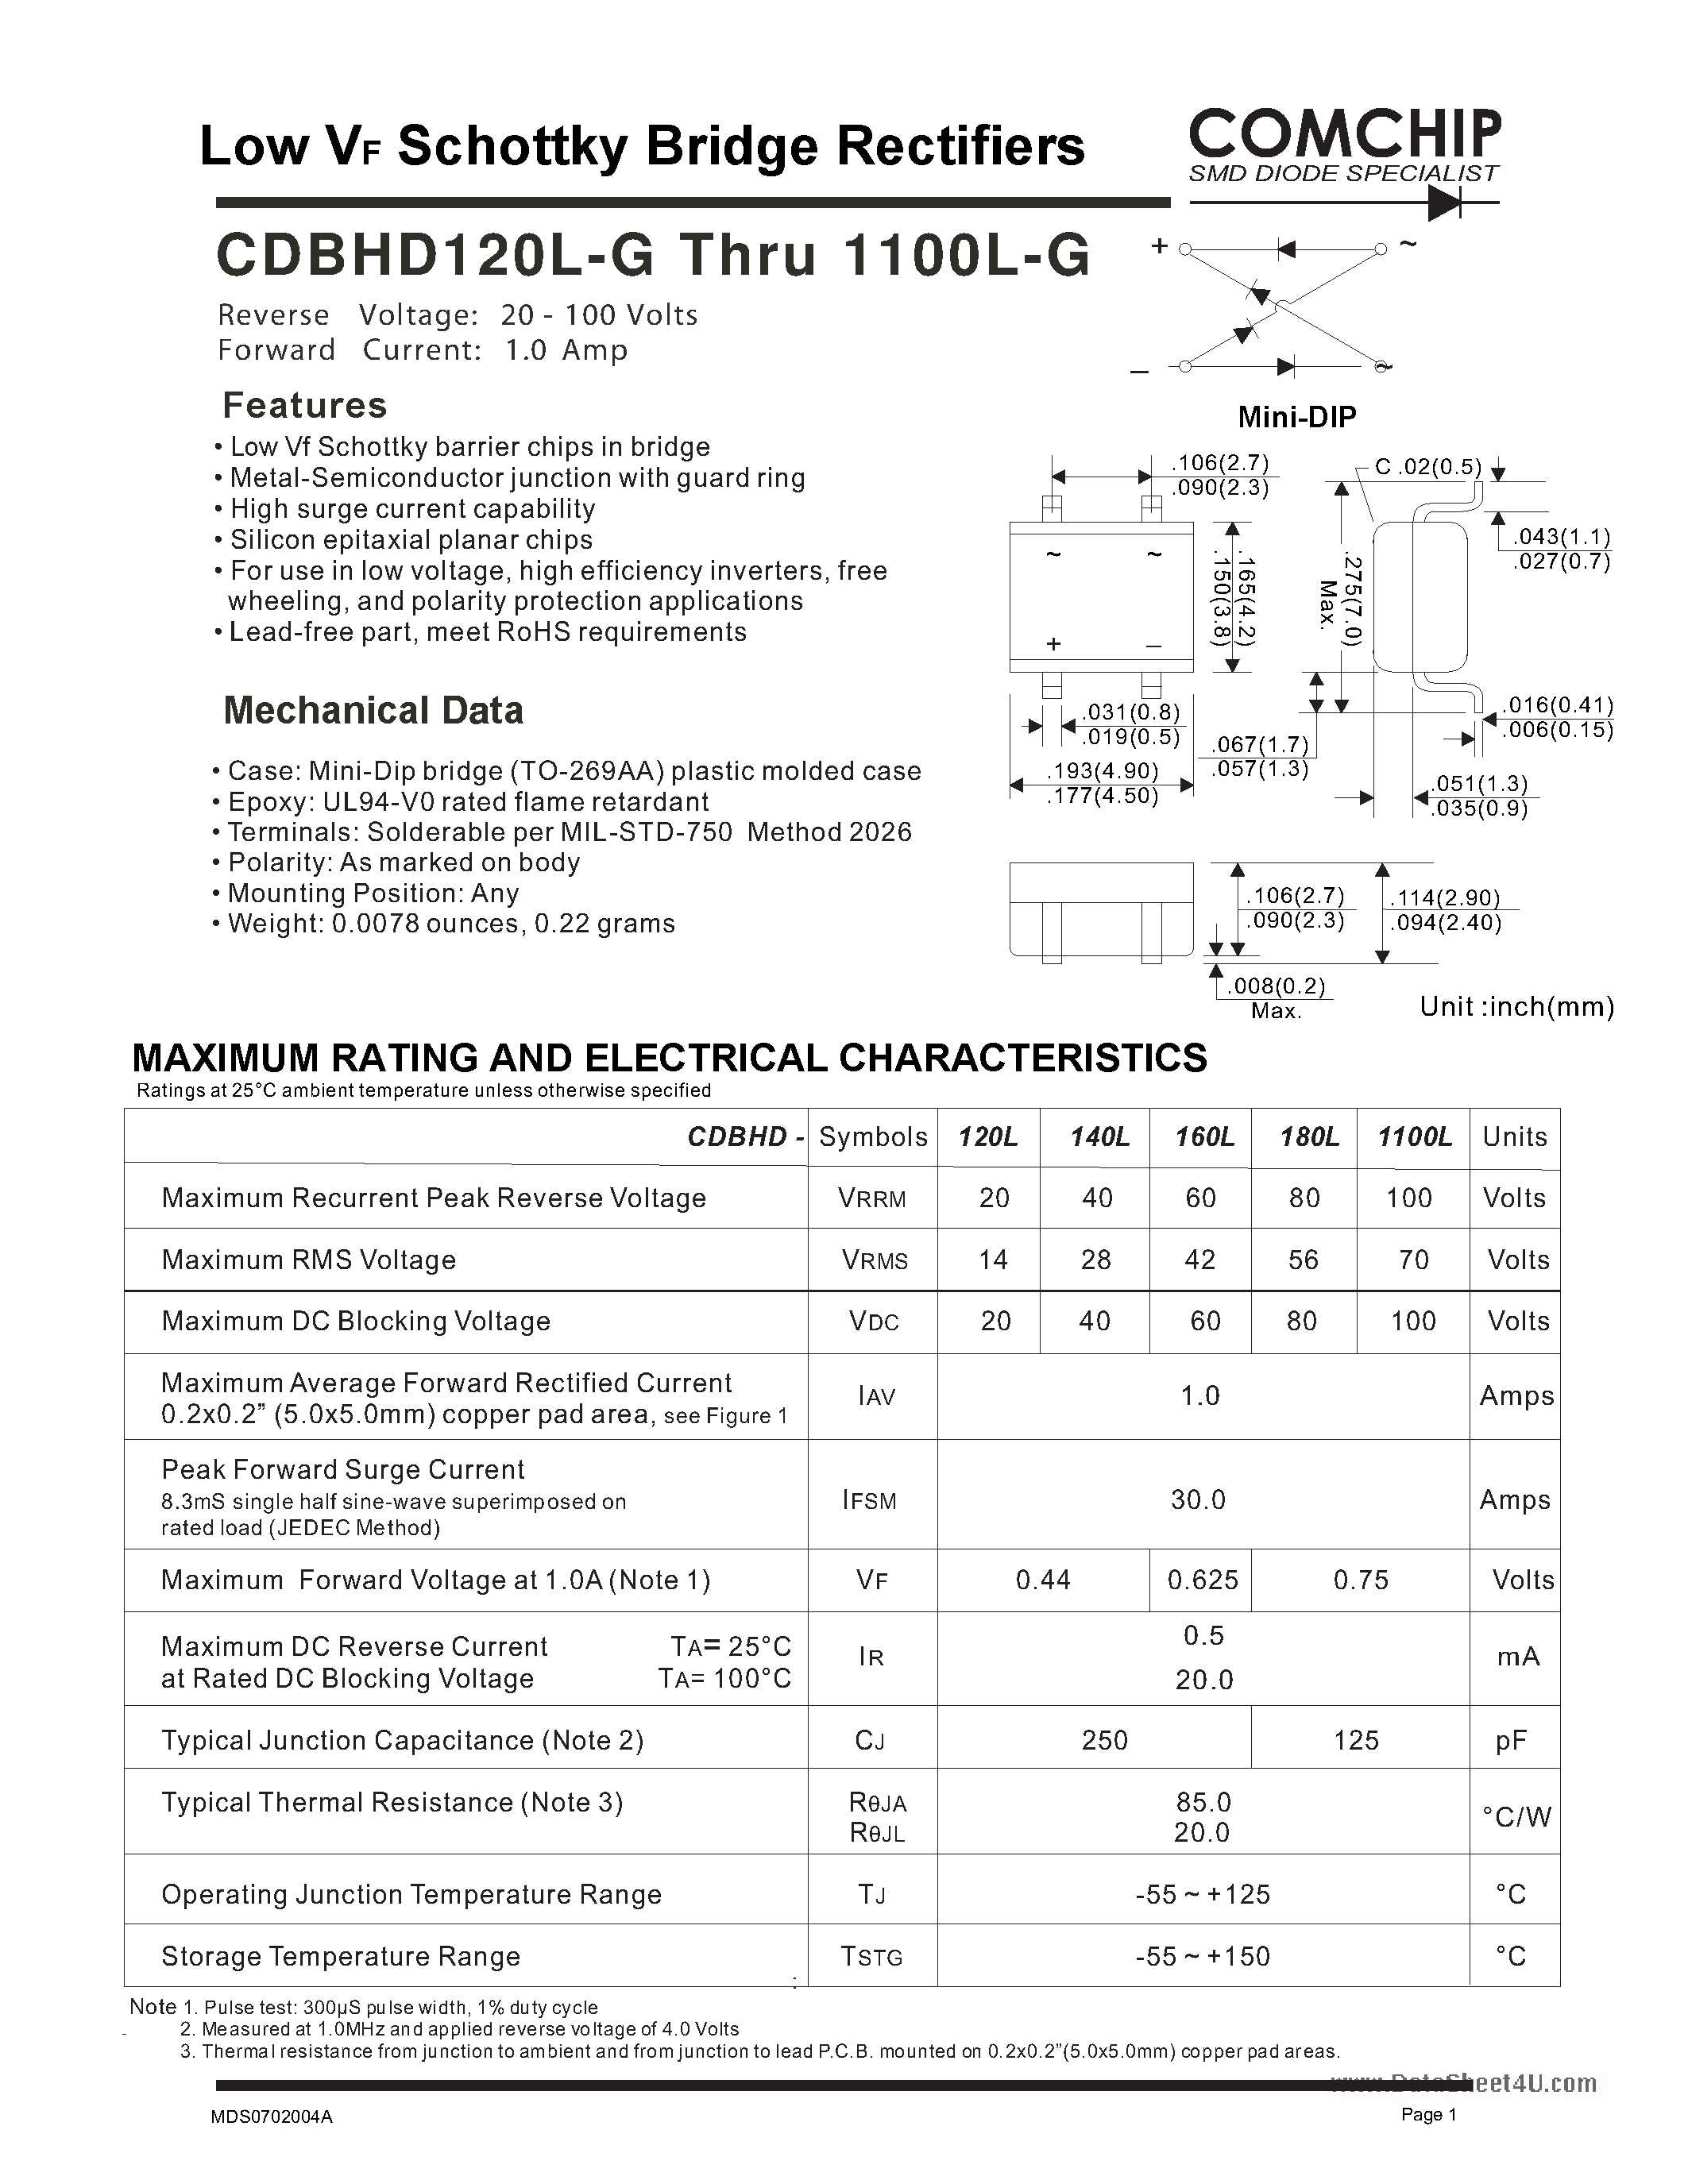 Даташит CDBHD1100L-G - (CDBHD120L-G - CDBHD1100L-G) Low VF Schottky Bridge Rectifiers страница 1